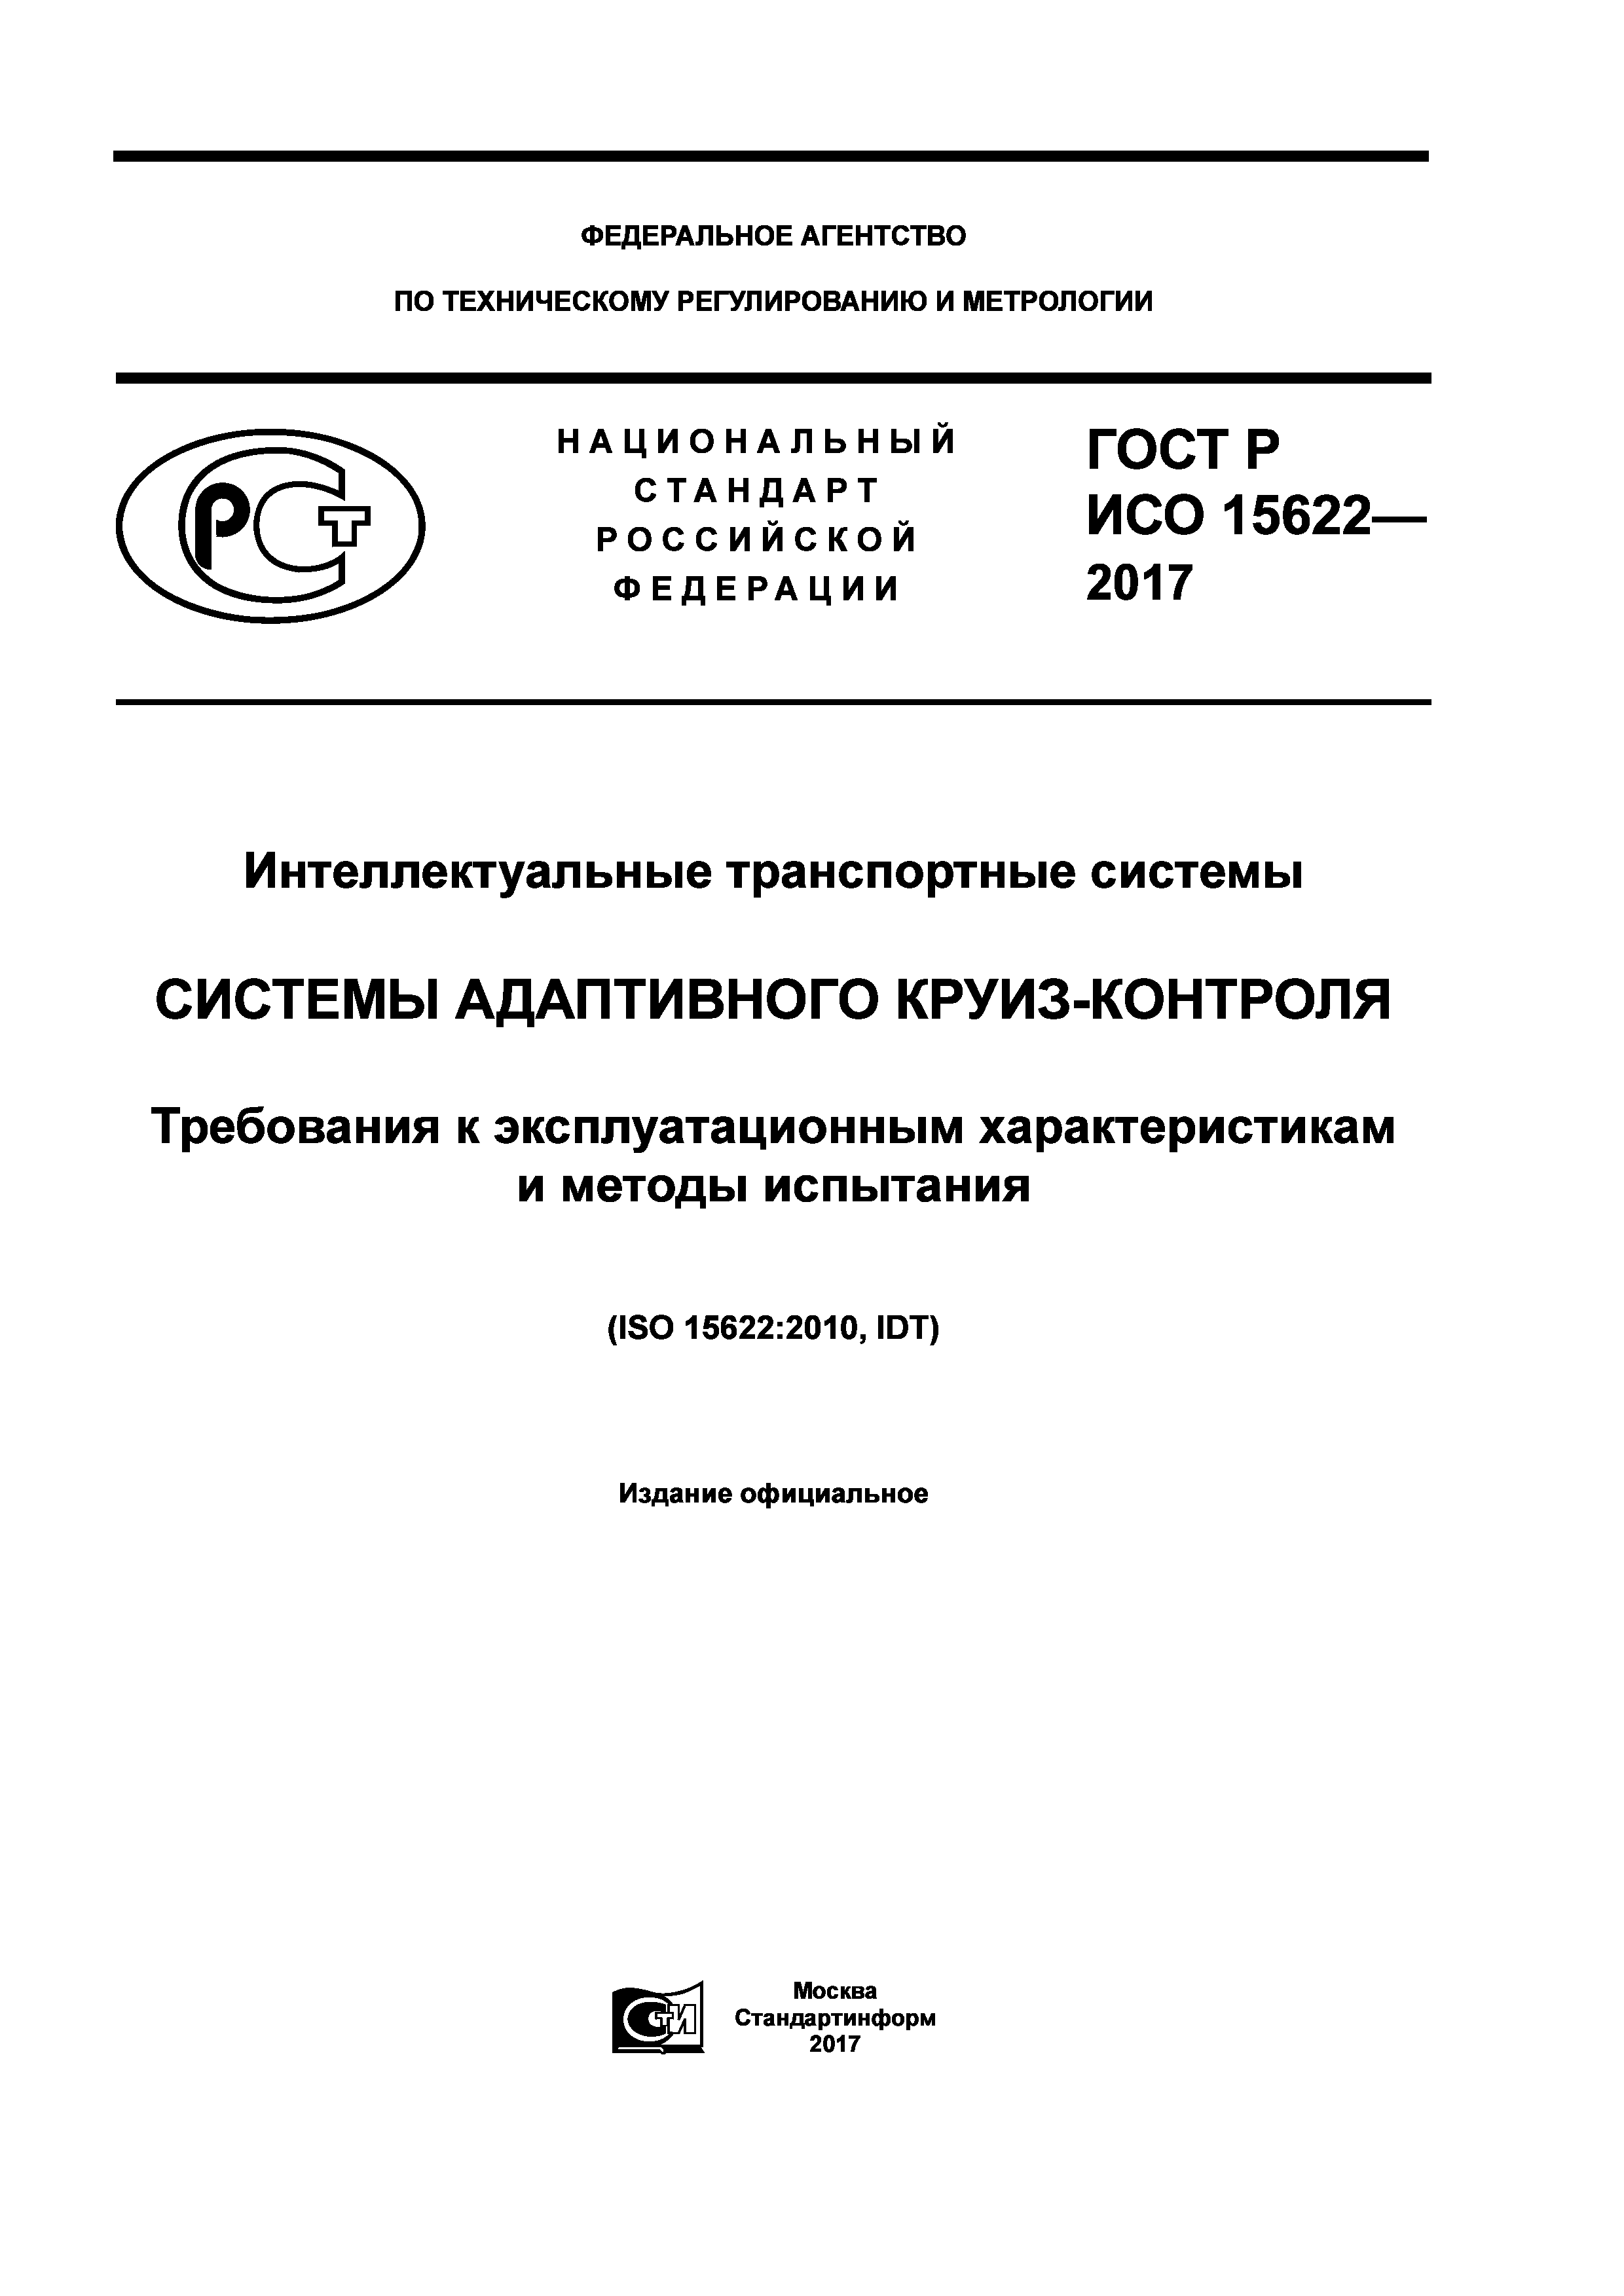 ГОСТ Р ИСО 15622-2017